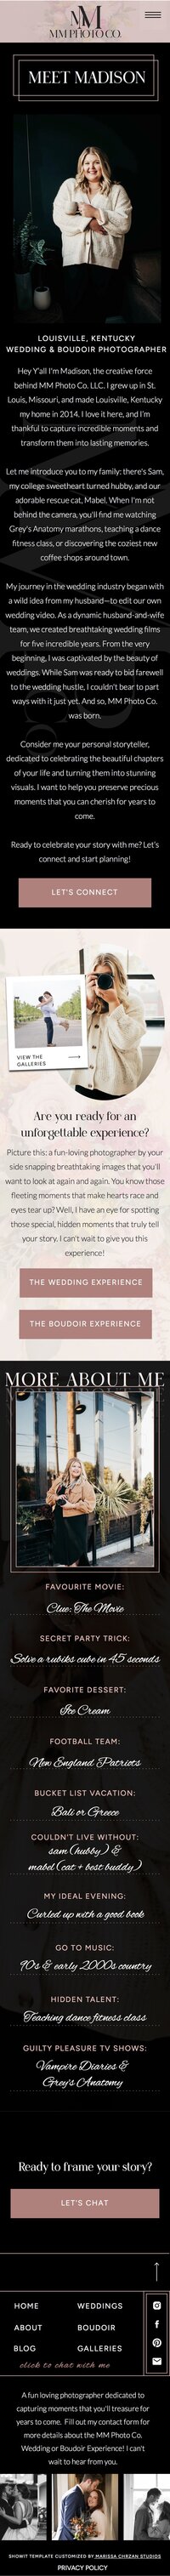 Screenshot of a wedding photography website design